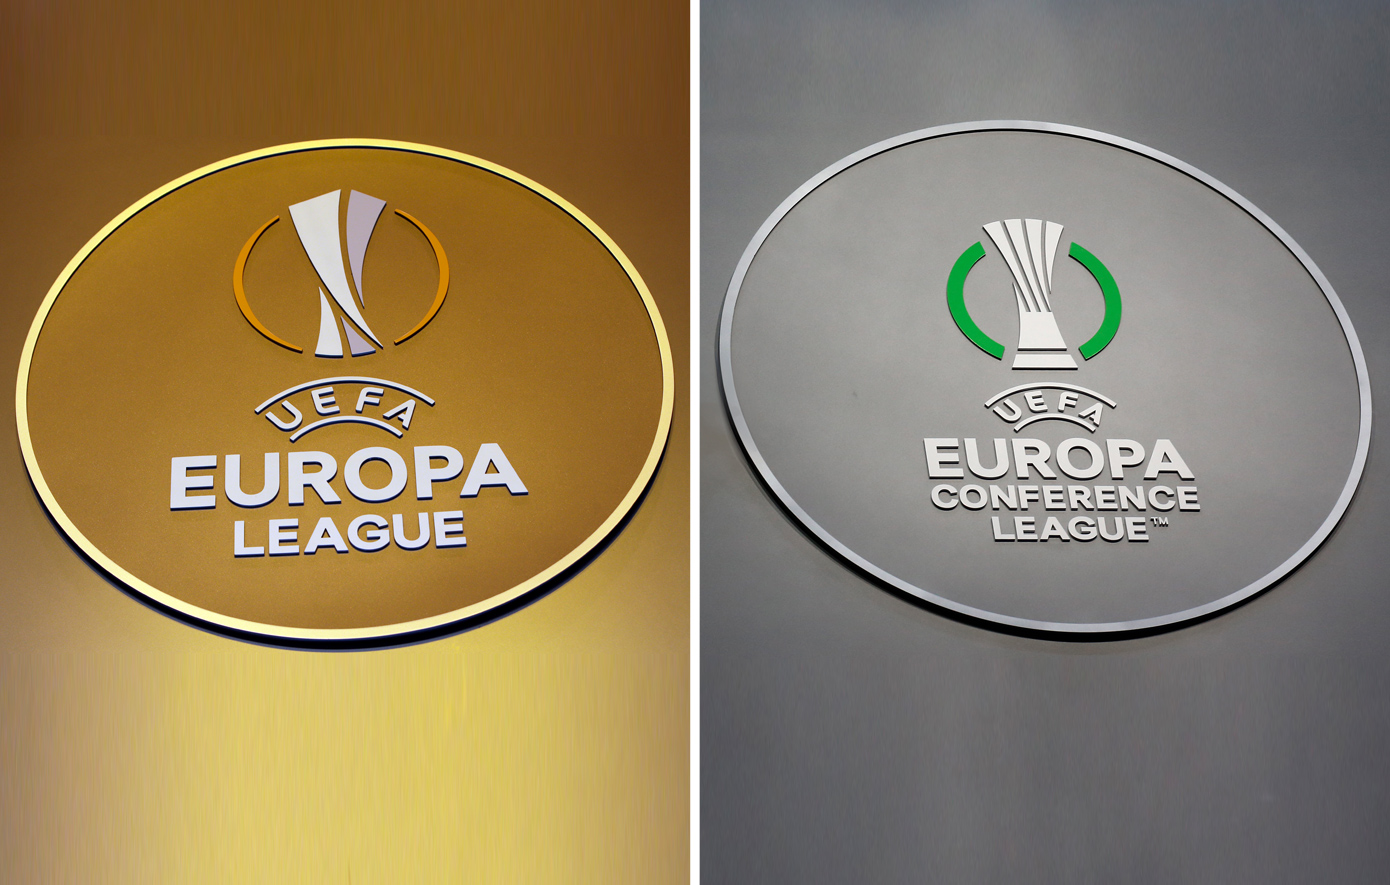 Στον ΑΝΤ1 Europa League και Conference League για τρία χρόνια